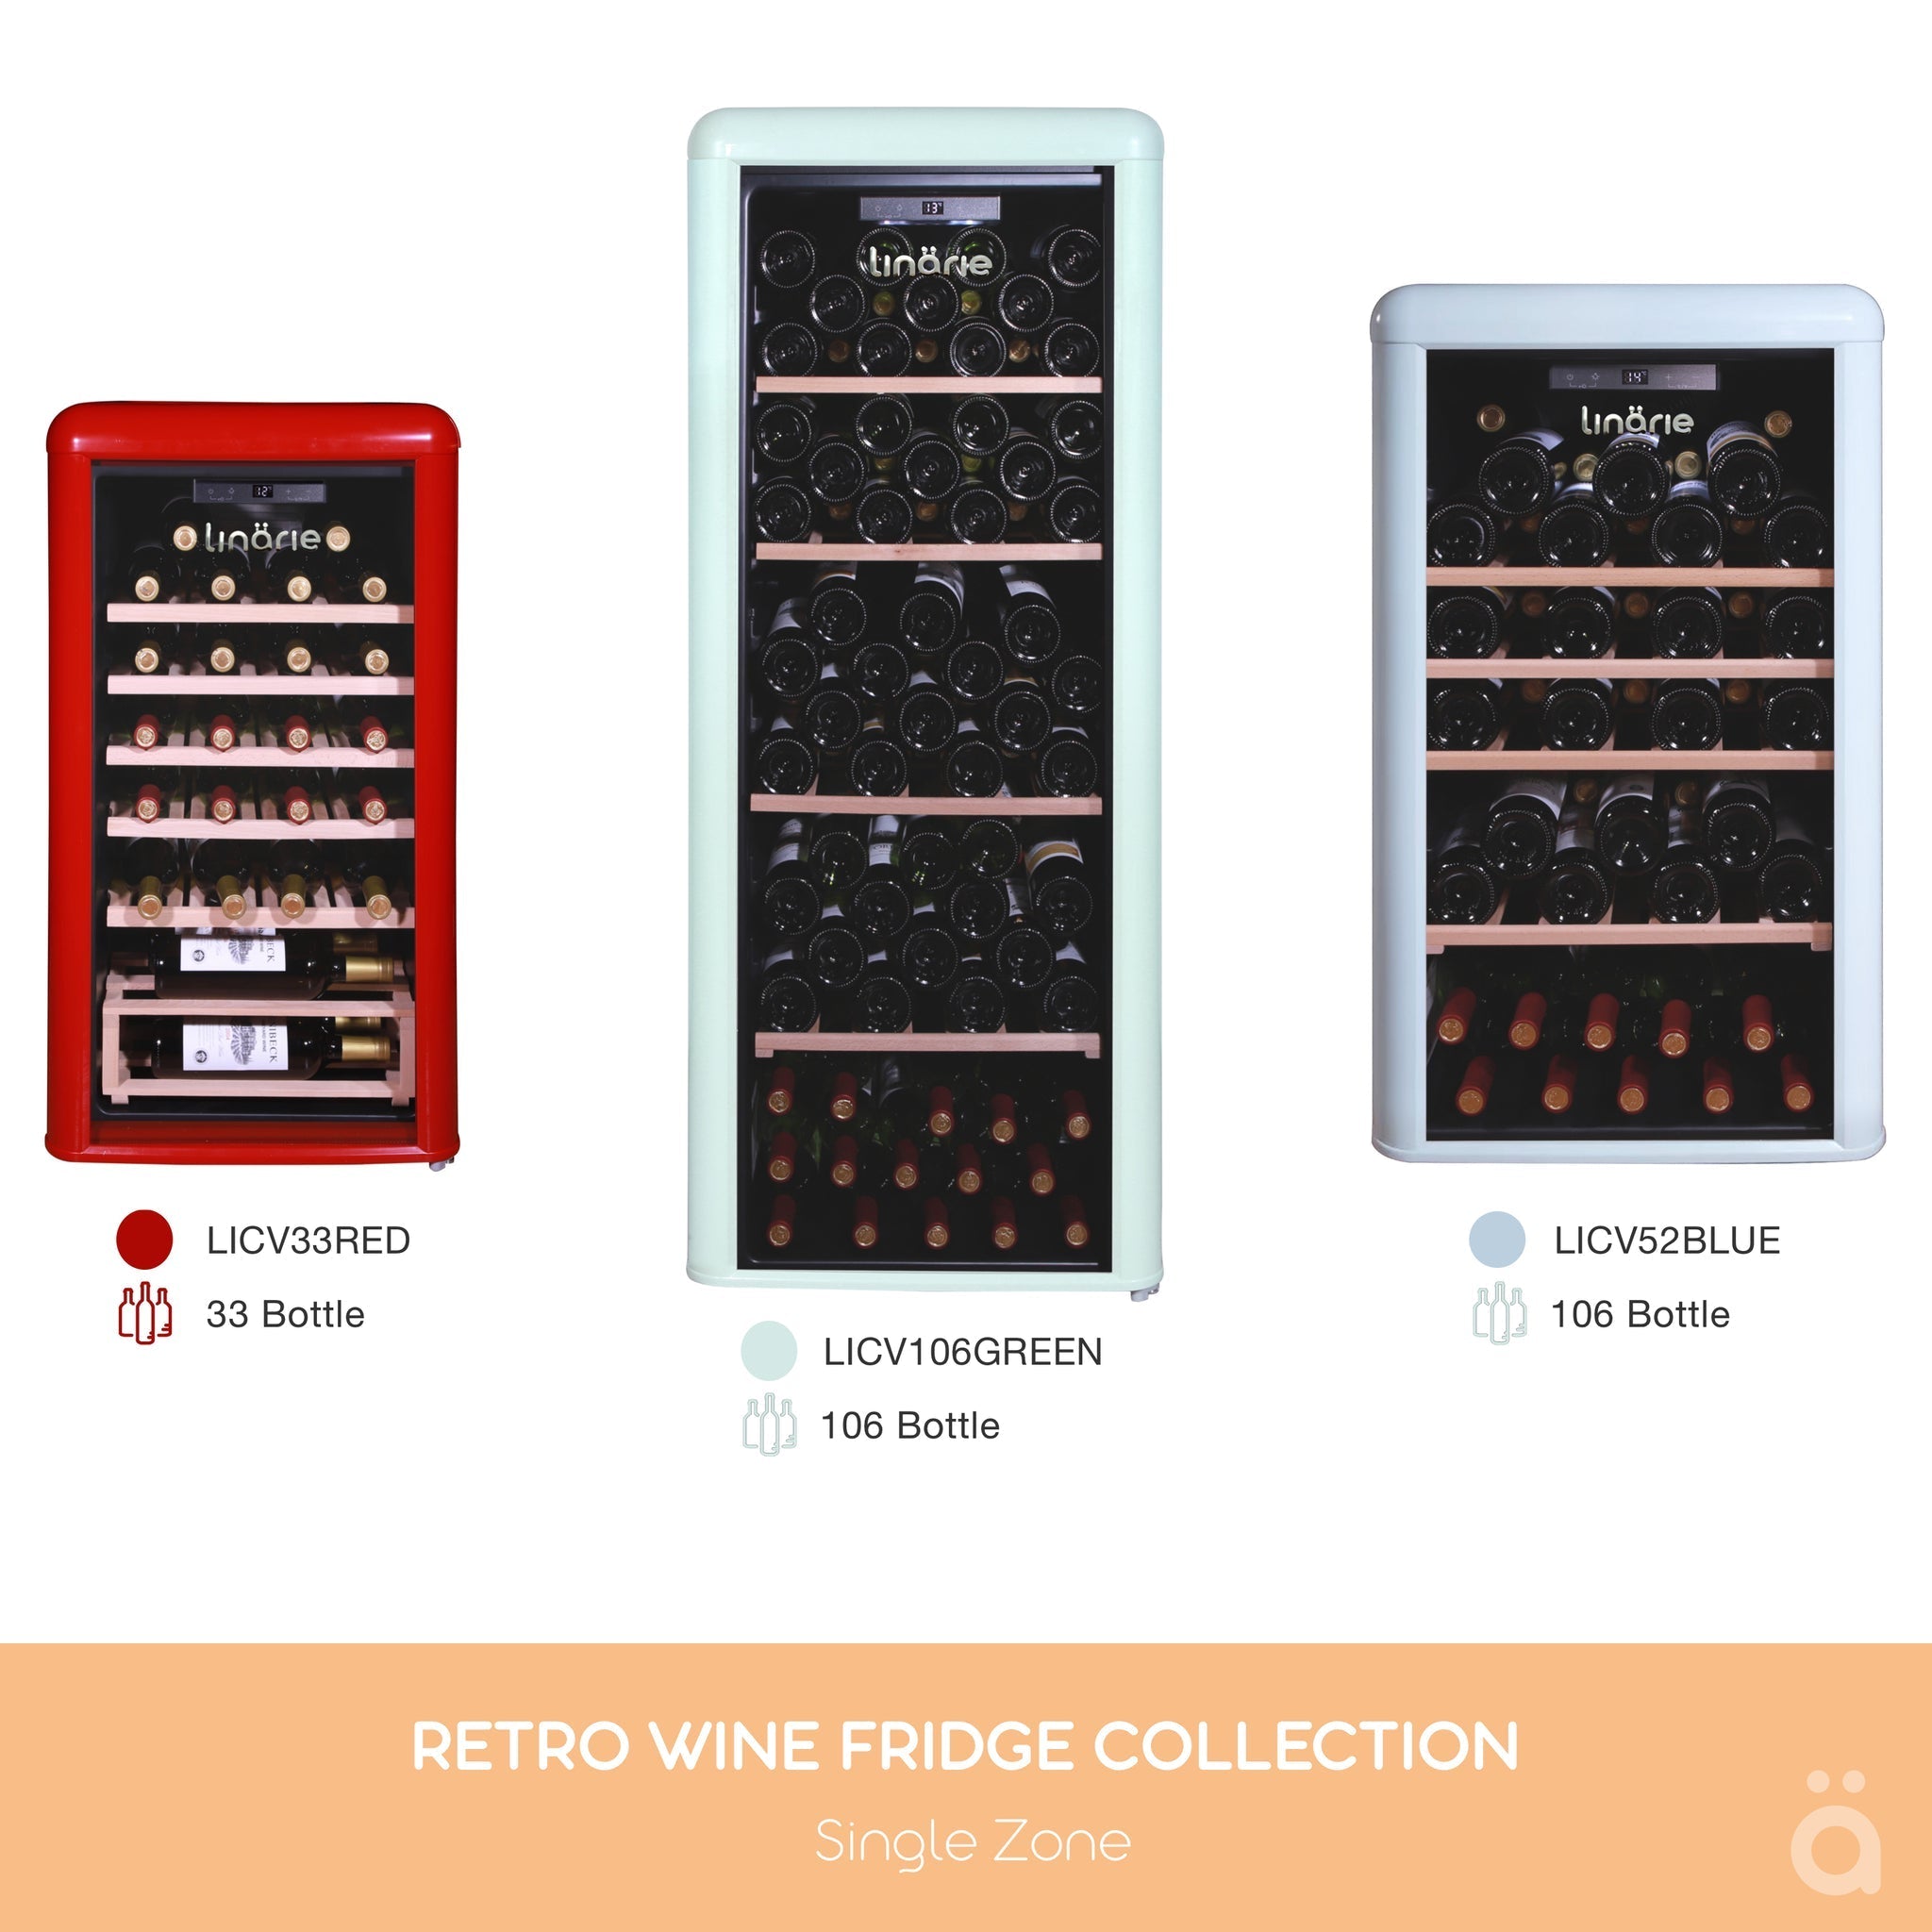 Linarie retro wine fridge size guide